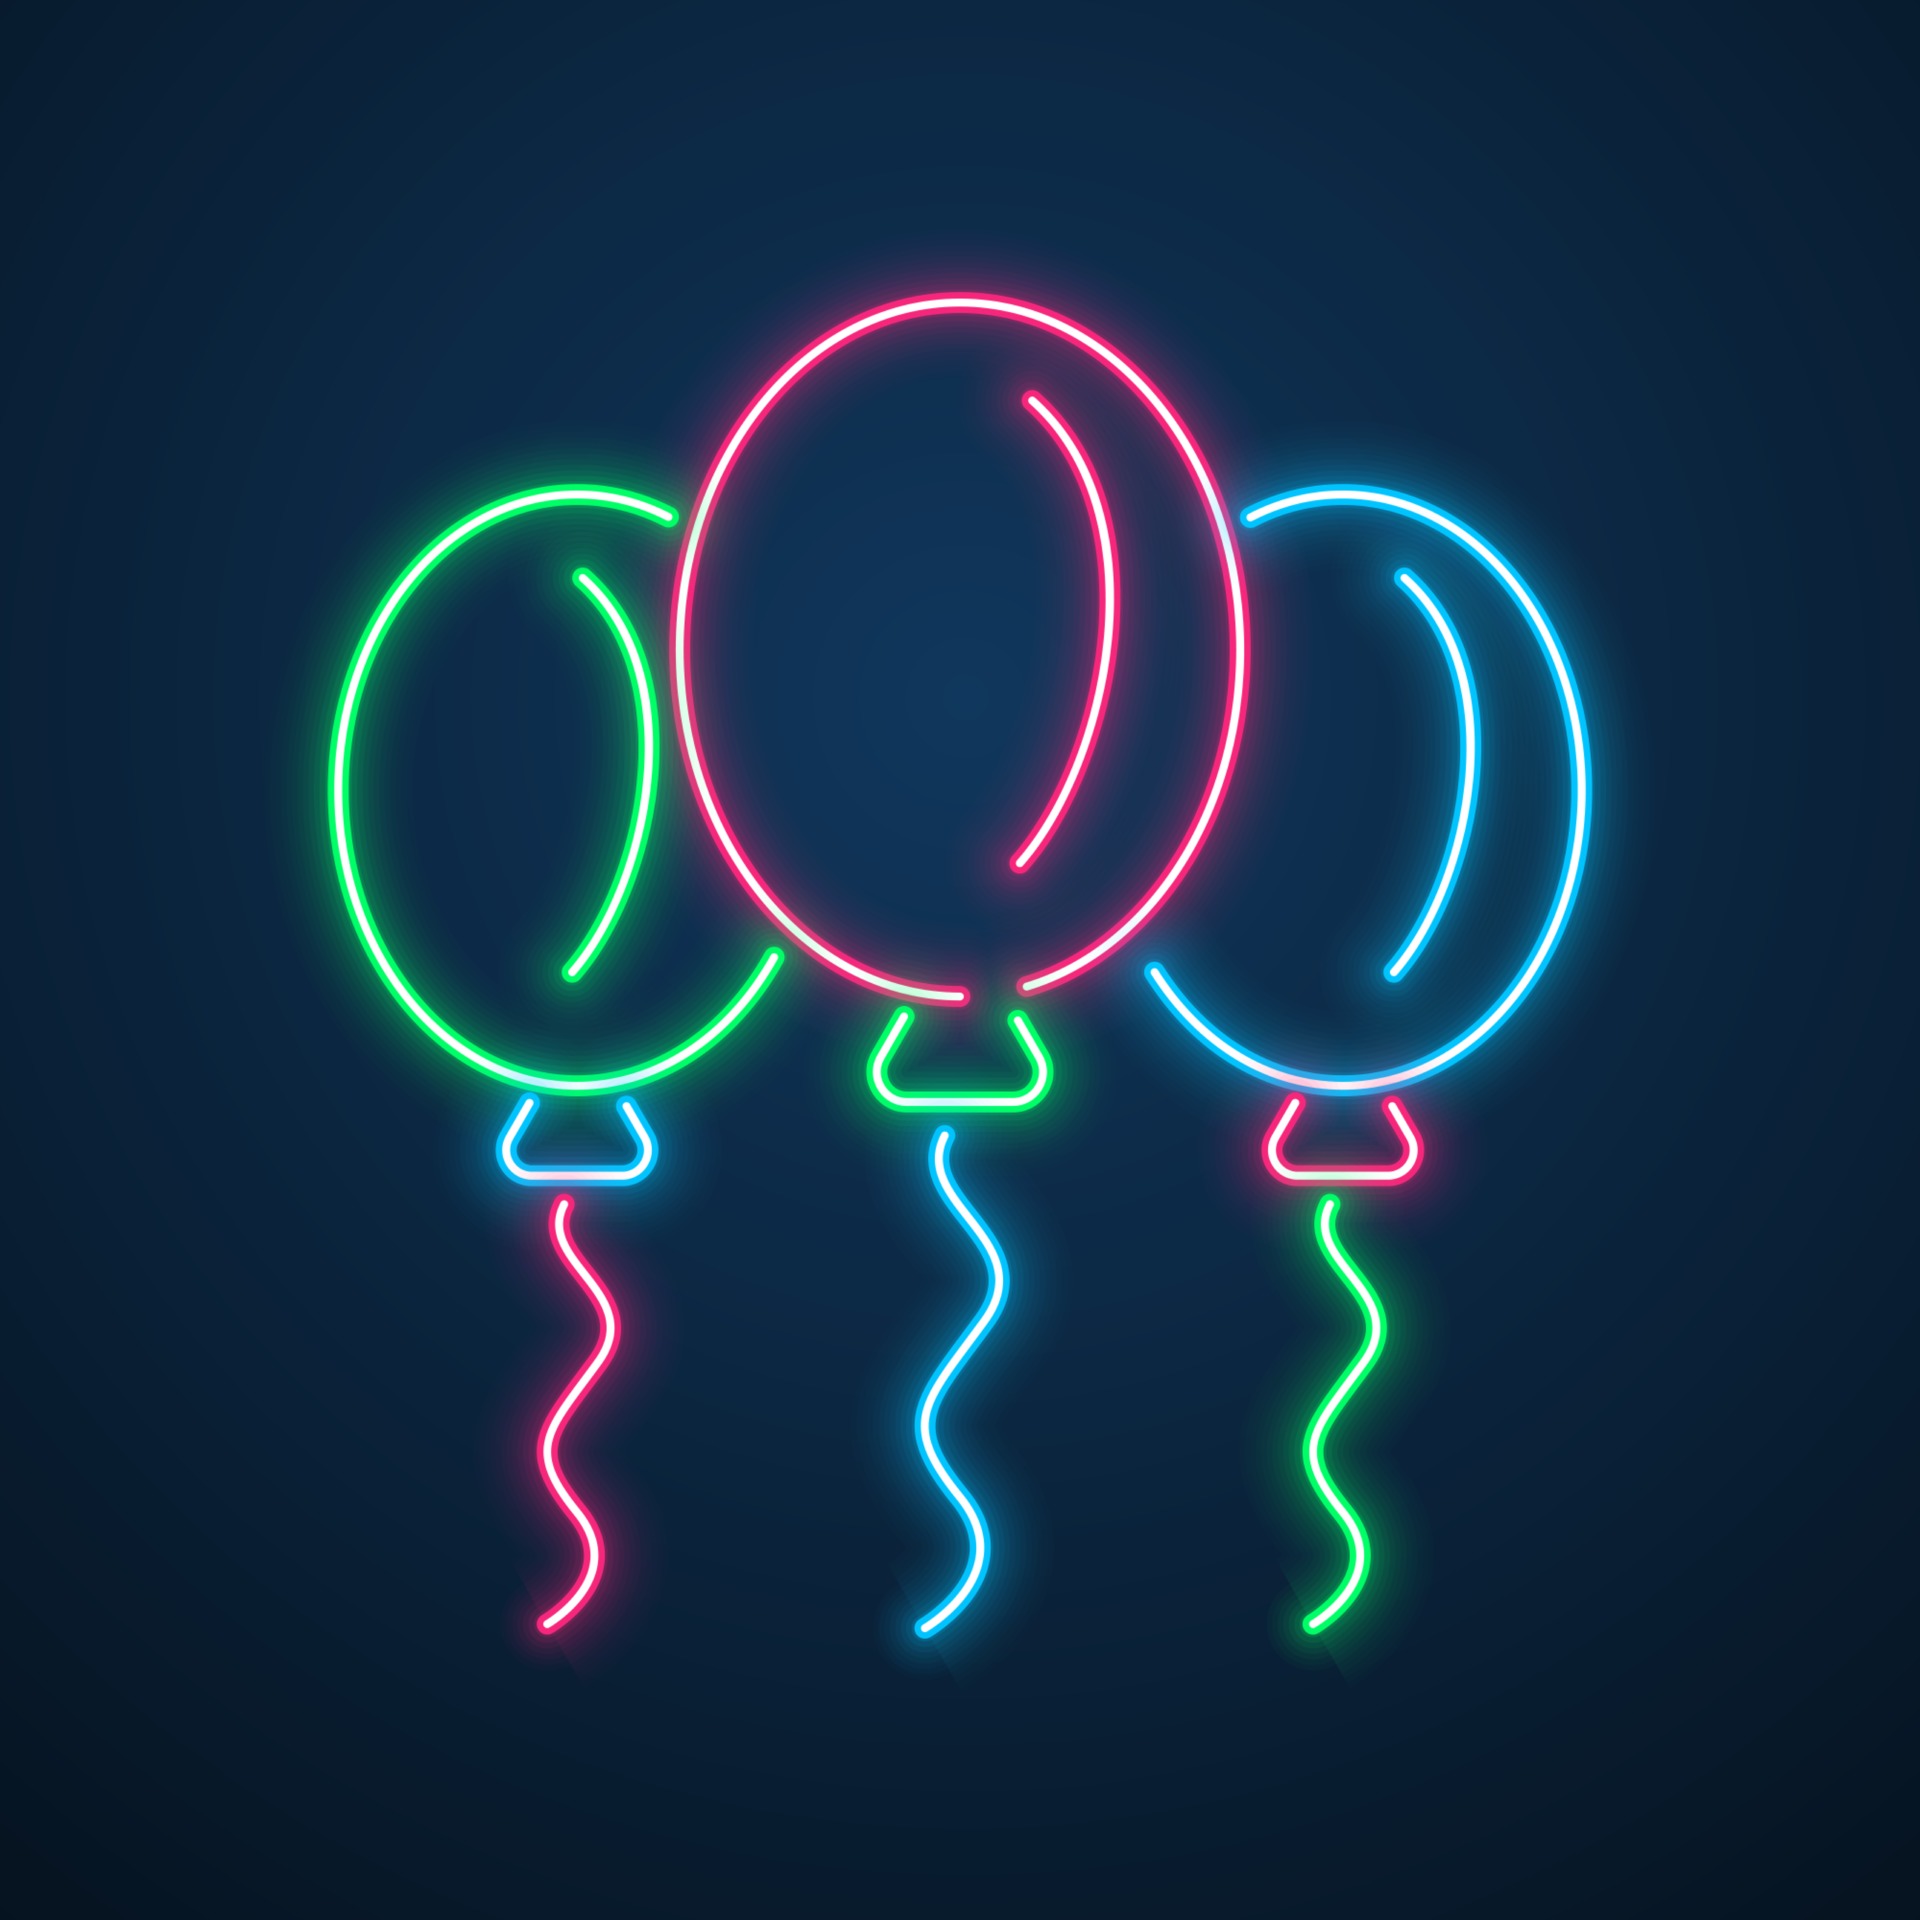 neon light balloon party vector 2497381 Vector Art at Vecteezy